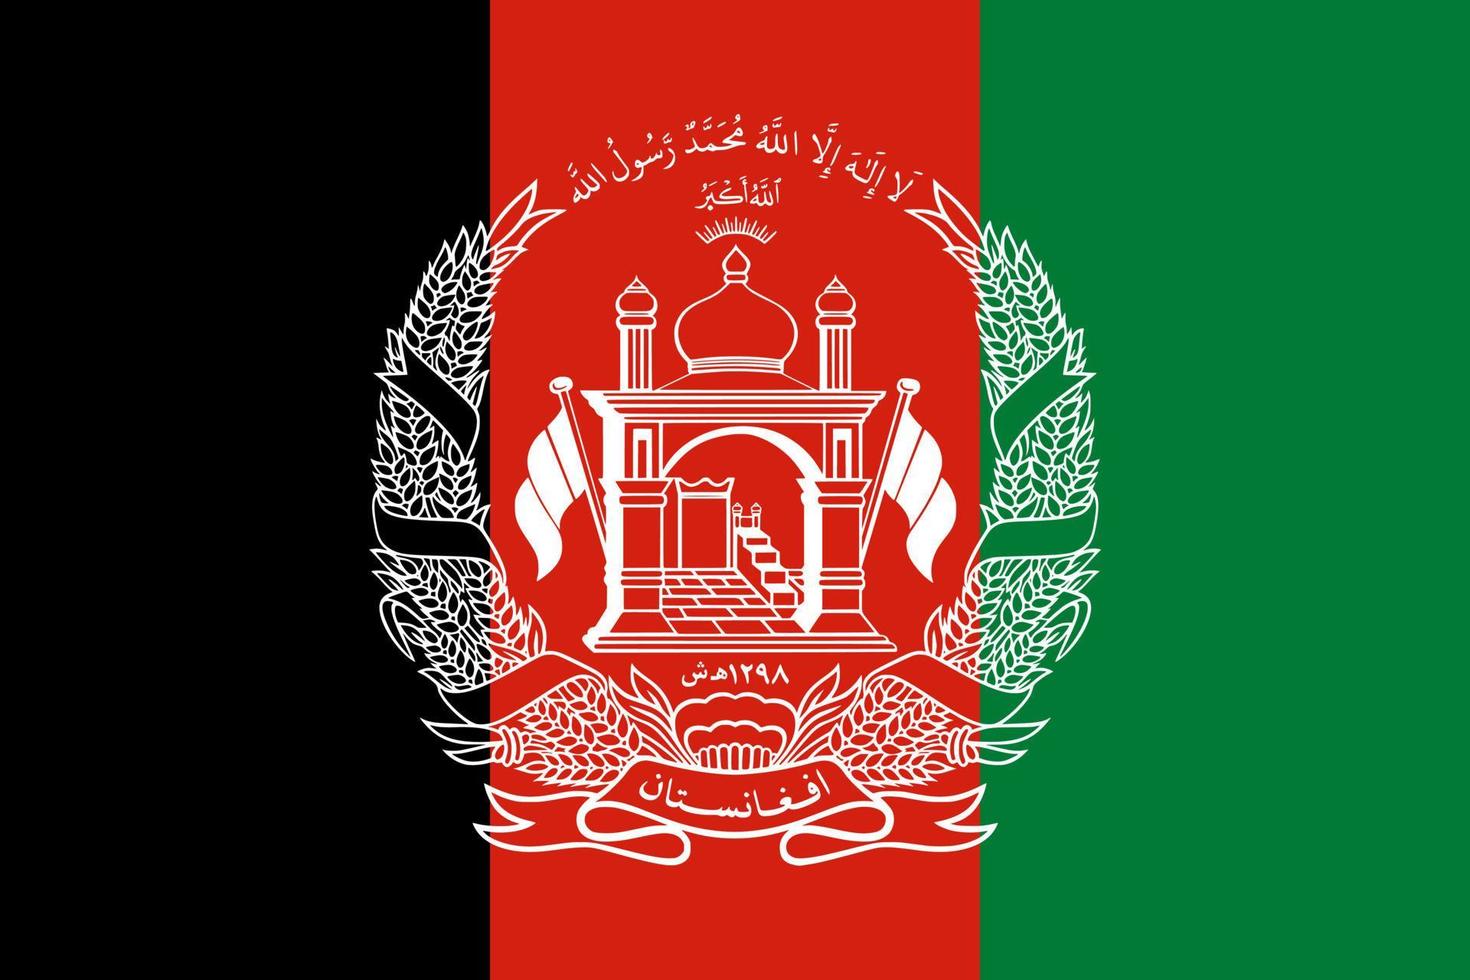 vector de bandera de afganistán